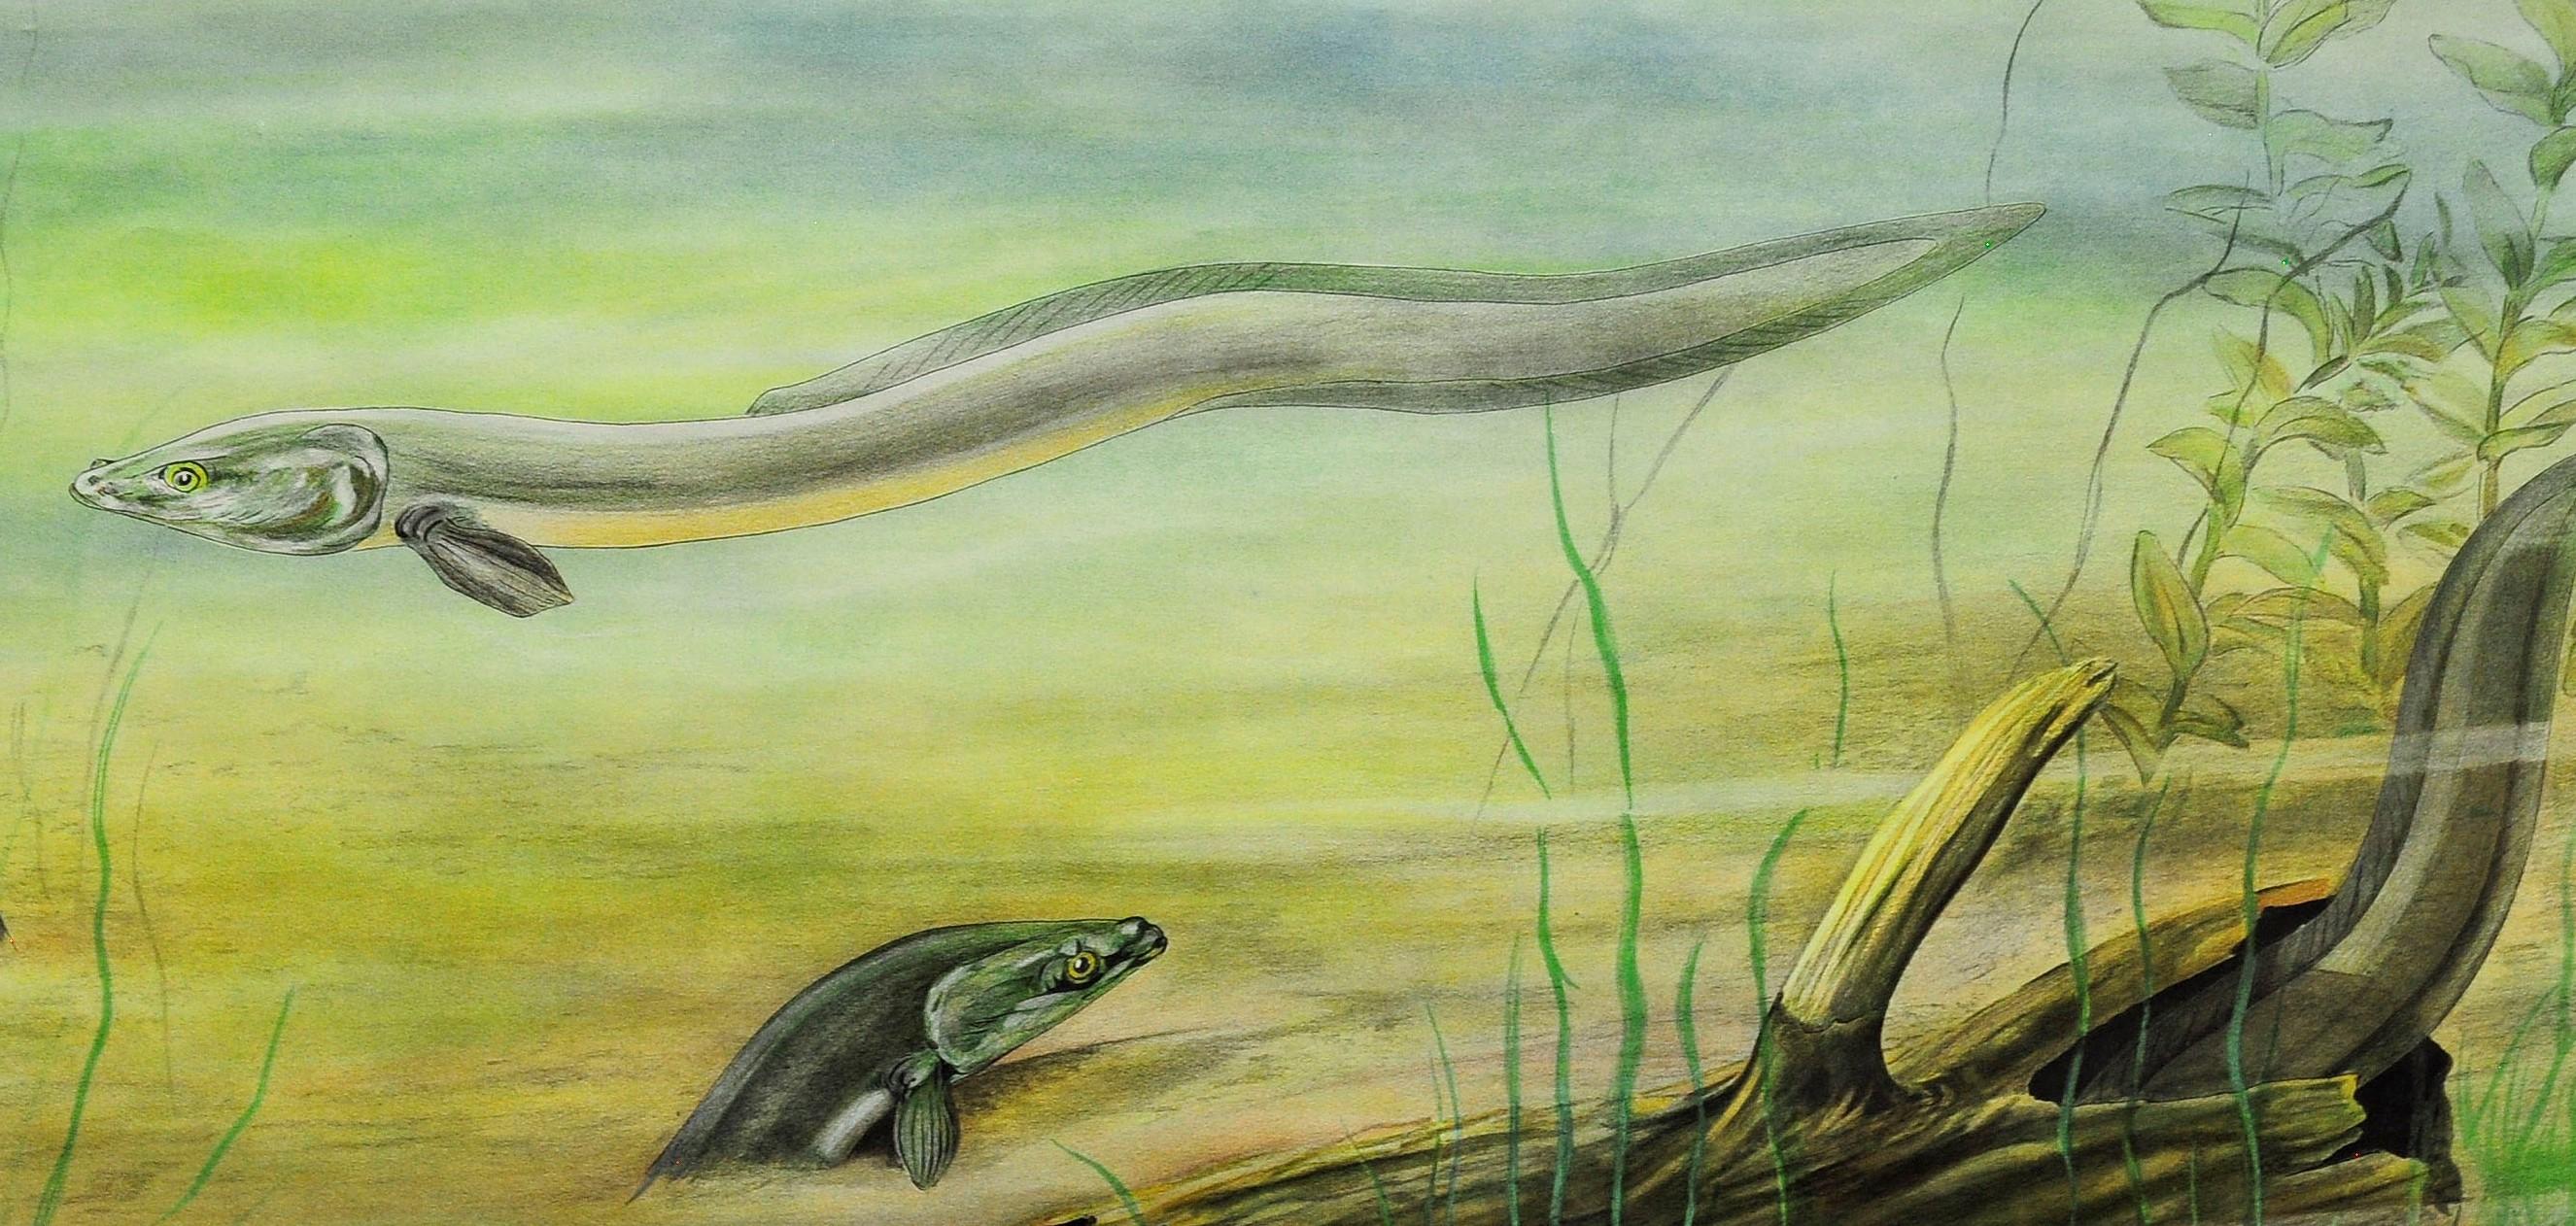 Un tableau mural déroulant cottagecore illustrant un charmant paysage sous-marin avec des anguilles. Painter M. Richter - Grnaskad av Svnenska naturskyddsföreningen. Utilisé comme matériel pédagogique dans les écoles allemandes. Impression colorée